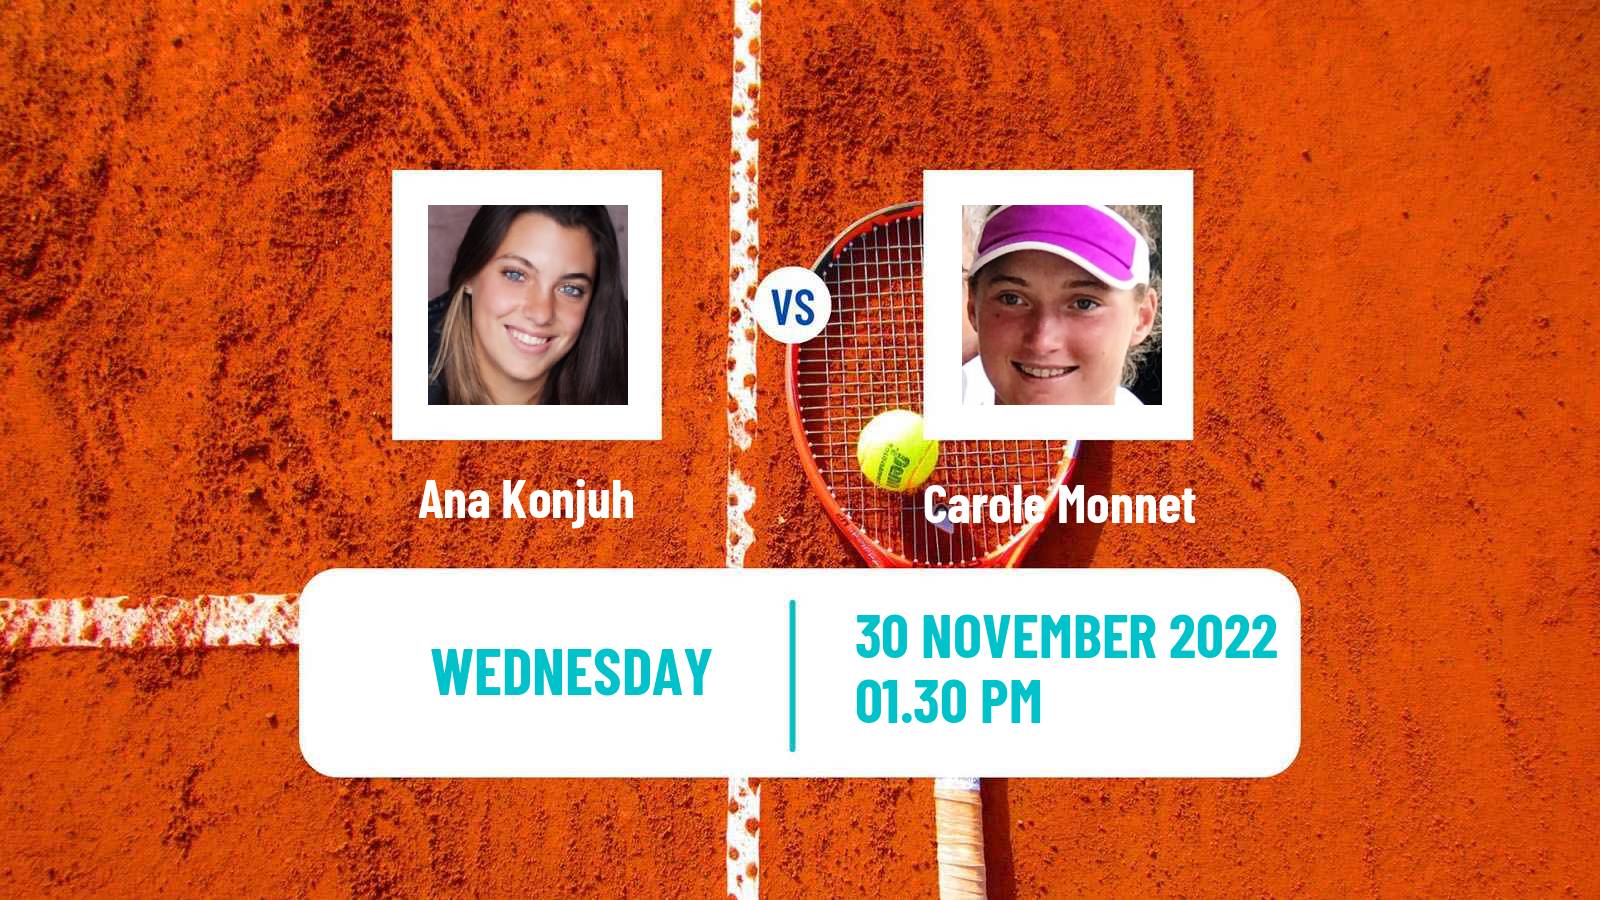 Tennis ATP Challenger Ana Konjuh - Carole Monnet